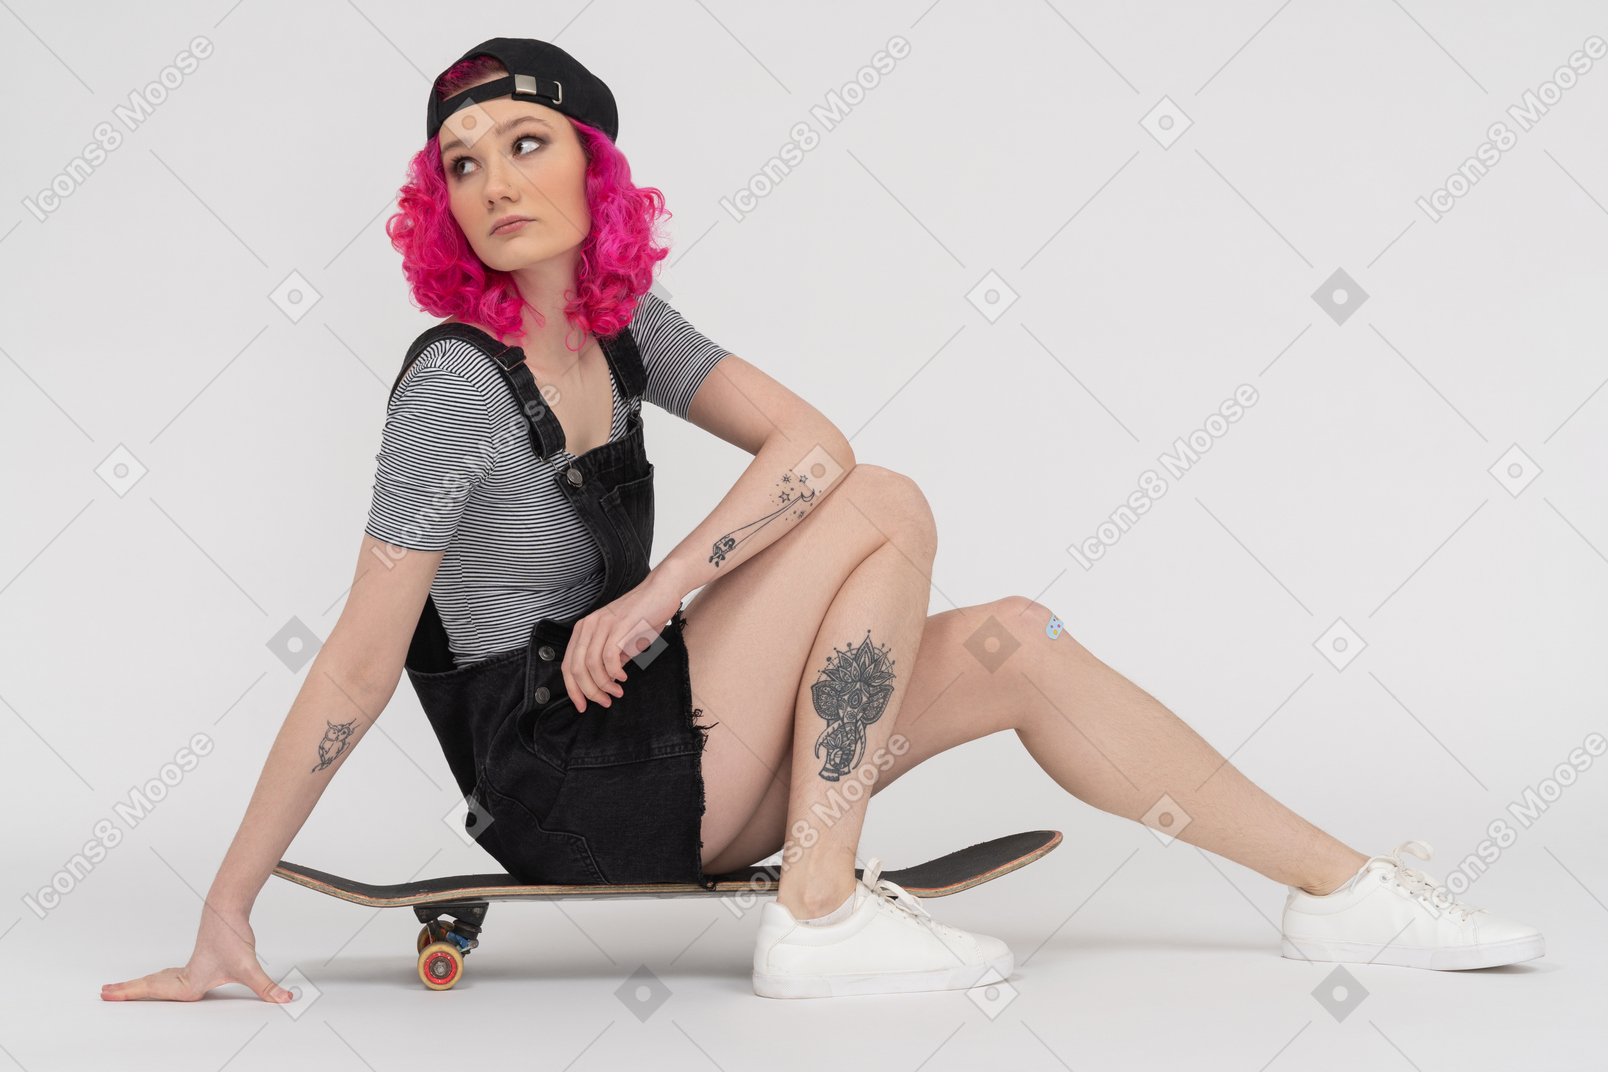 Ragazza tatuata con i capelli rosa seduto su uno skateboard